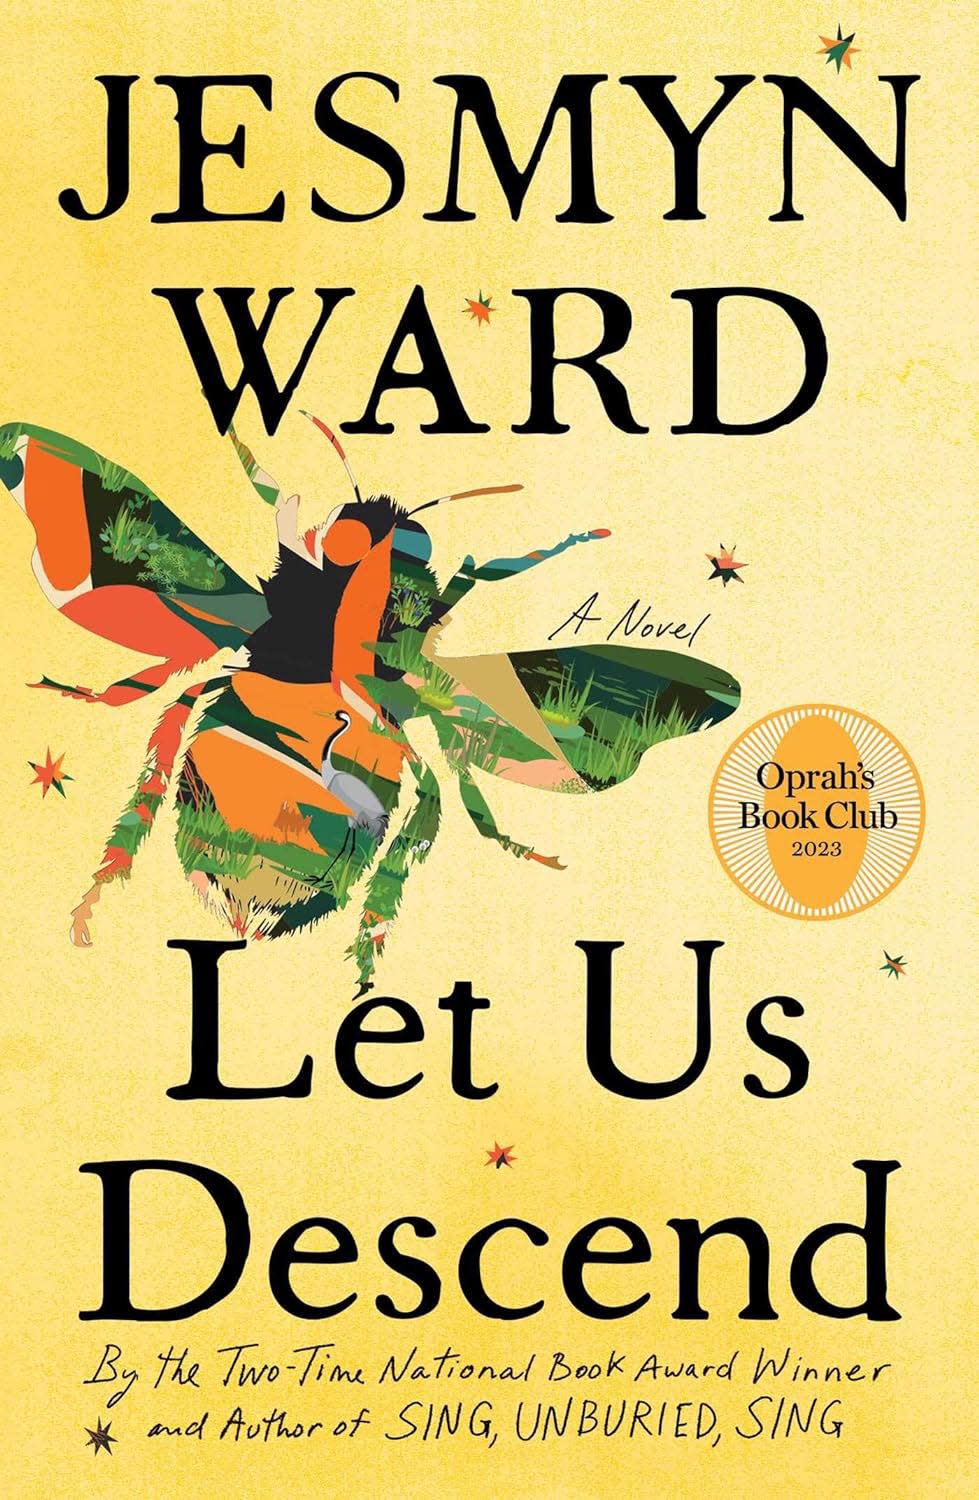 Jesmyn Ward's new novel is "Let Us Descend."